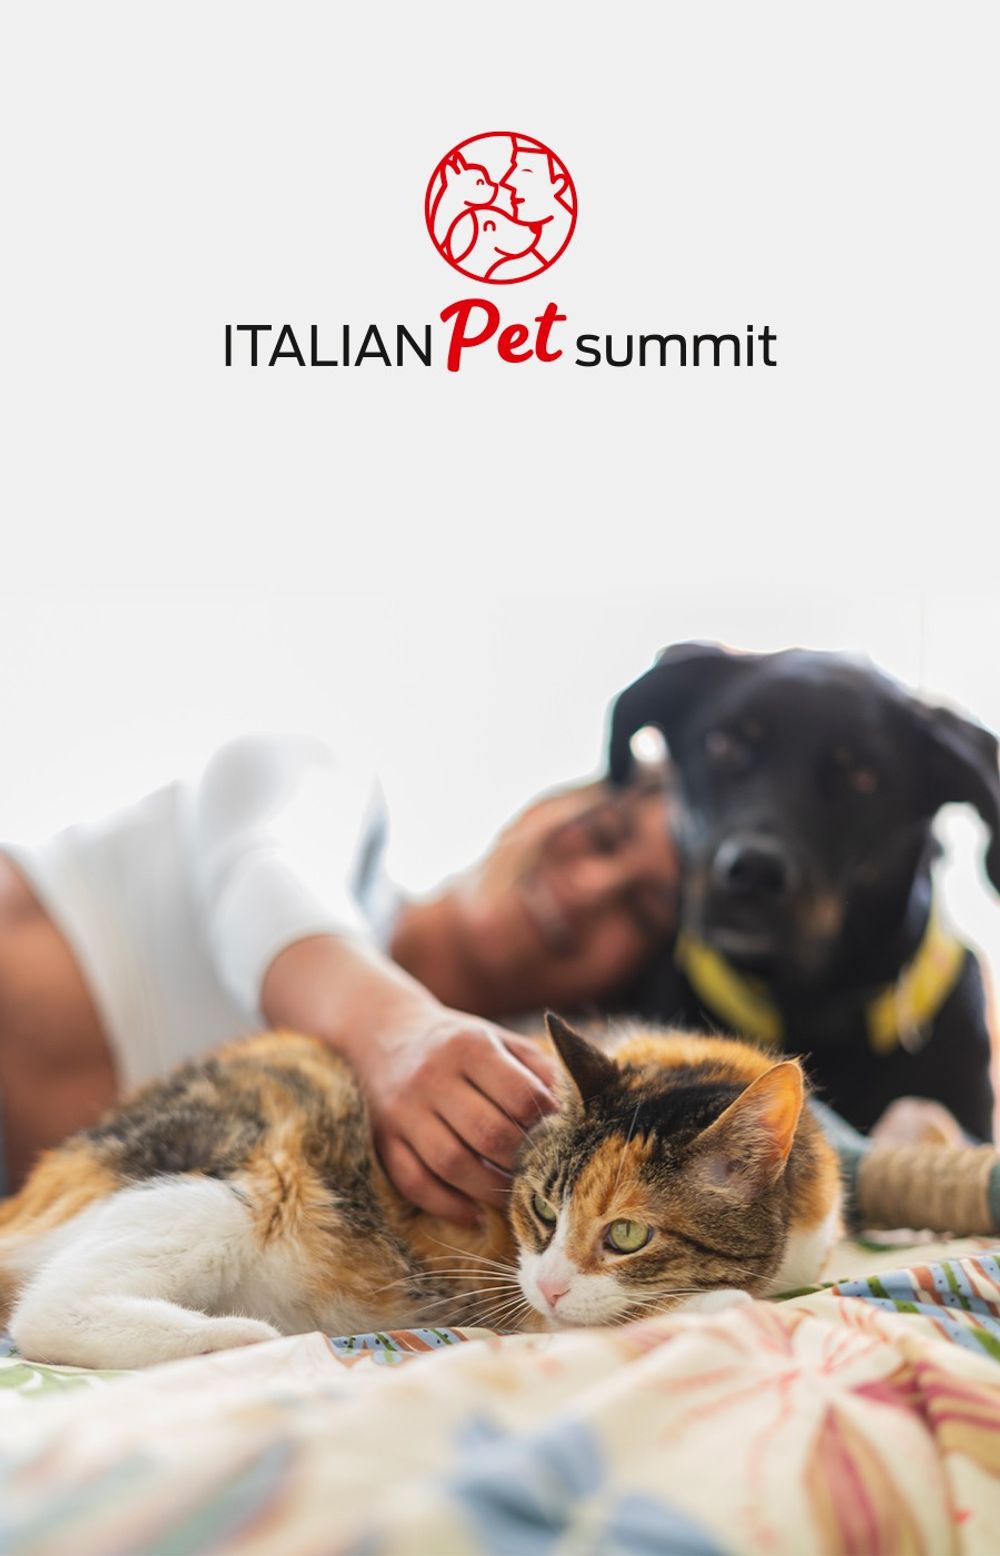 Italian Pet Summit 2024